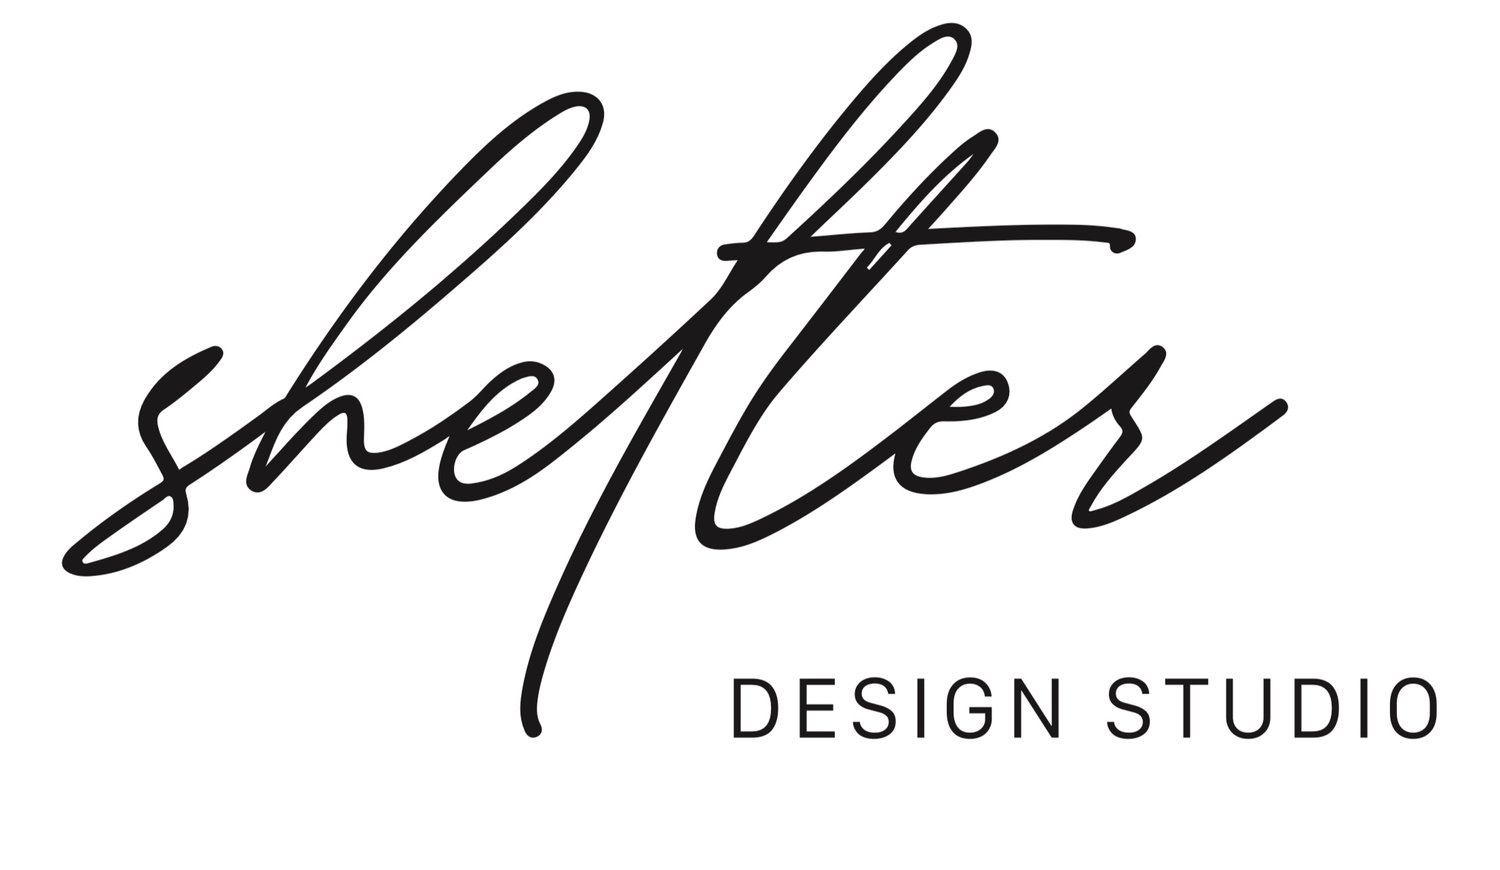 Shelter Design Studio LLC